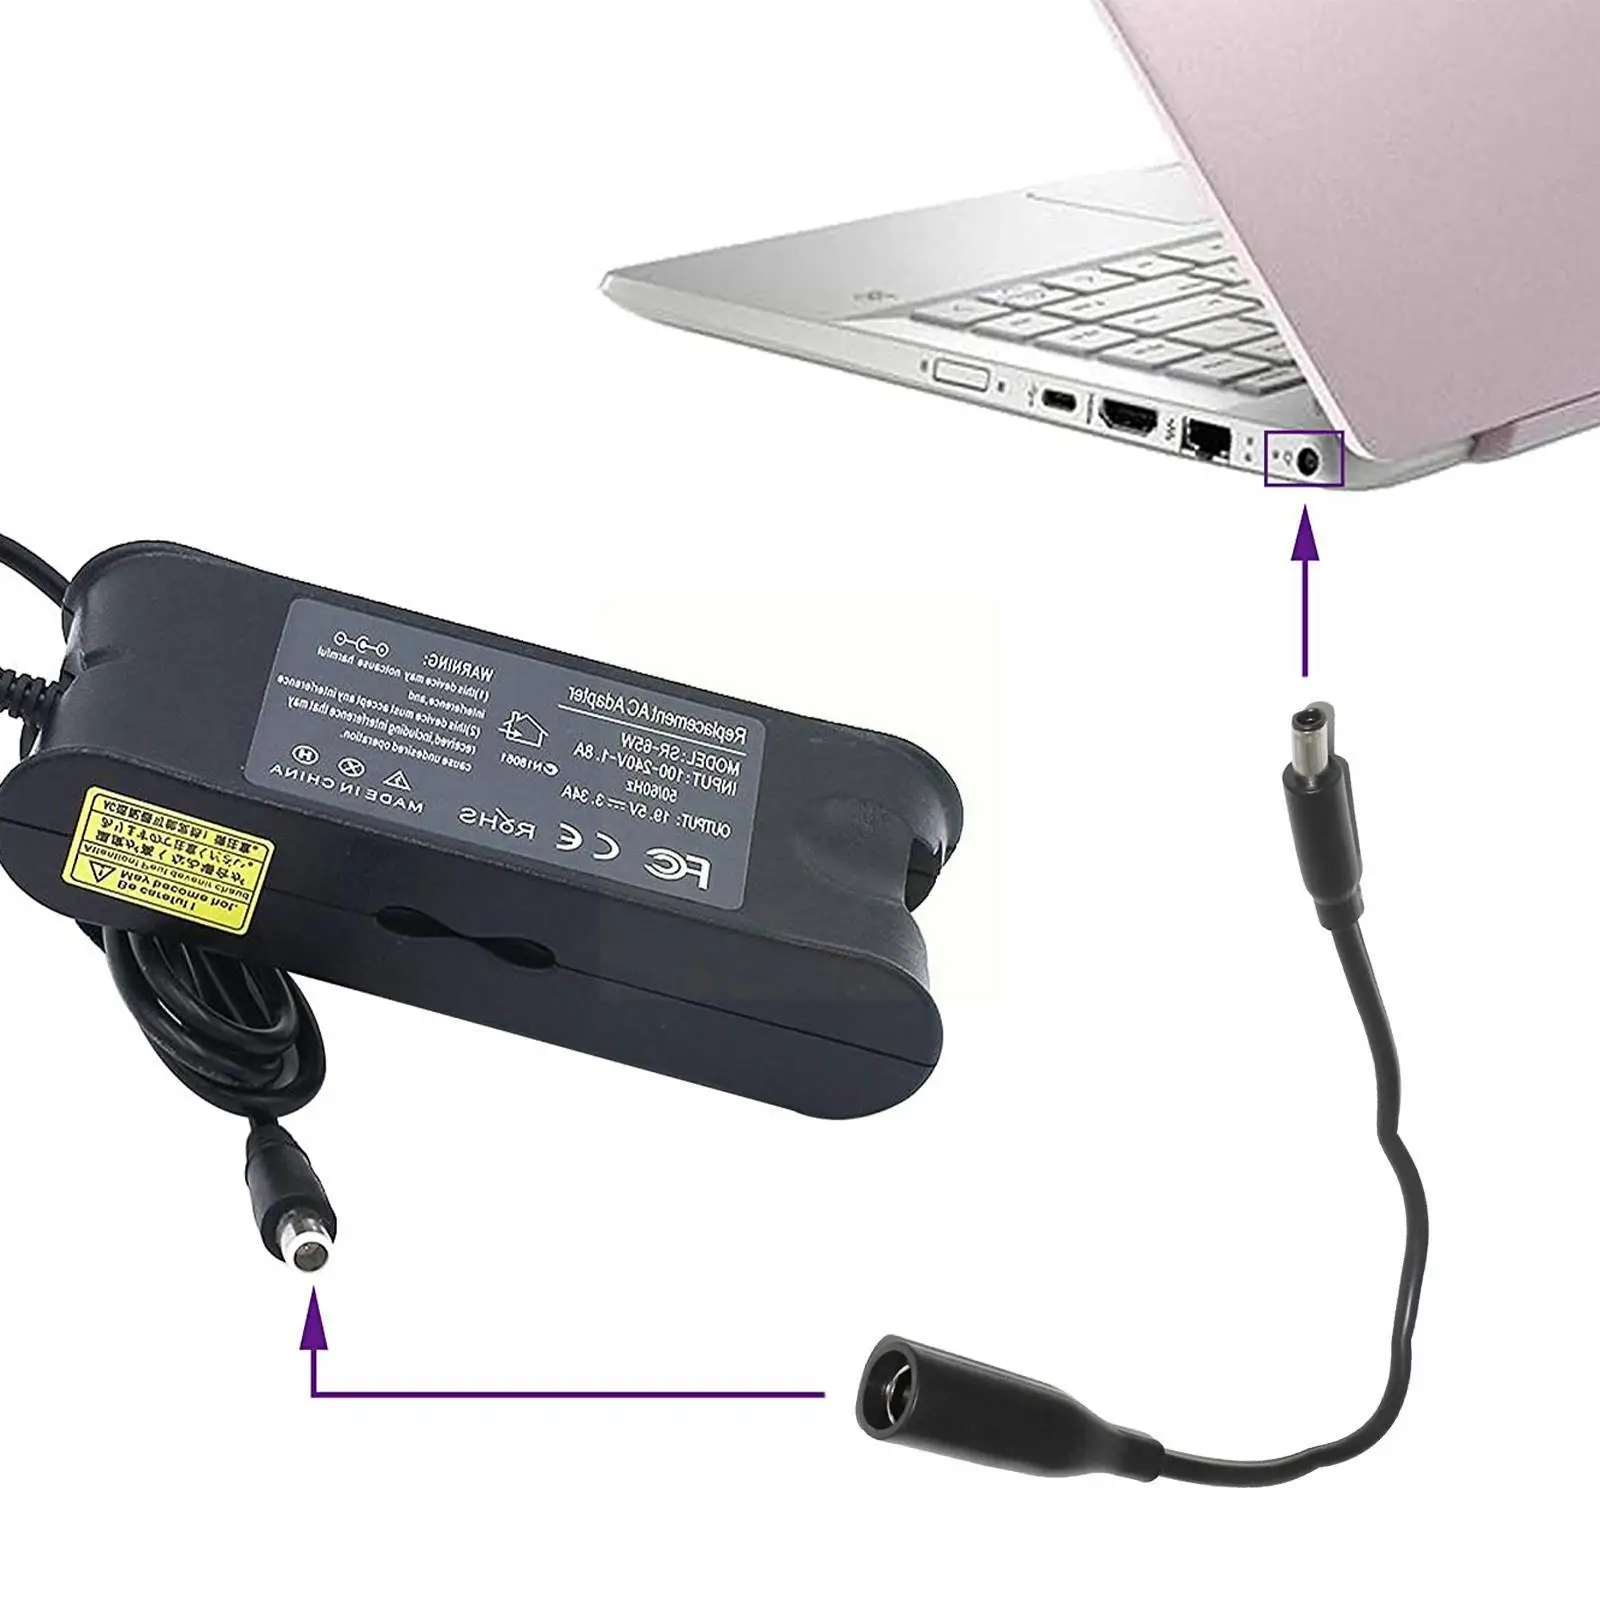 

Адаптер питания постоянного тока для ноутбуков Dell, переходник с кабелем на штекер 4,5*3,0, шнур 7,4*5,0 мм, круглый разъем «мама» A0E6